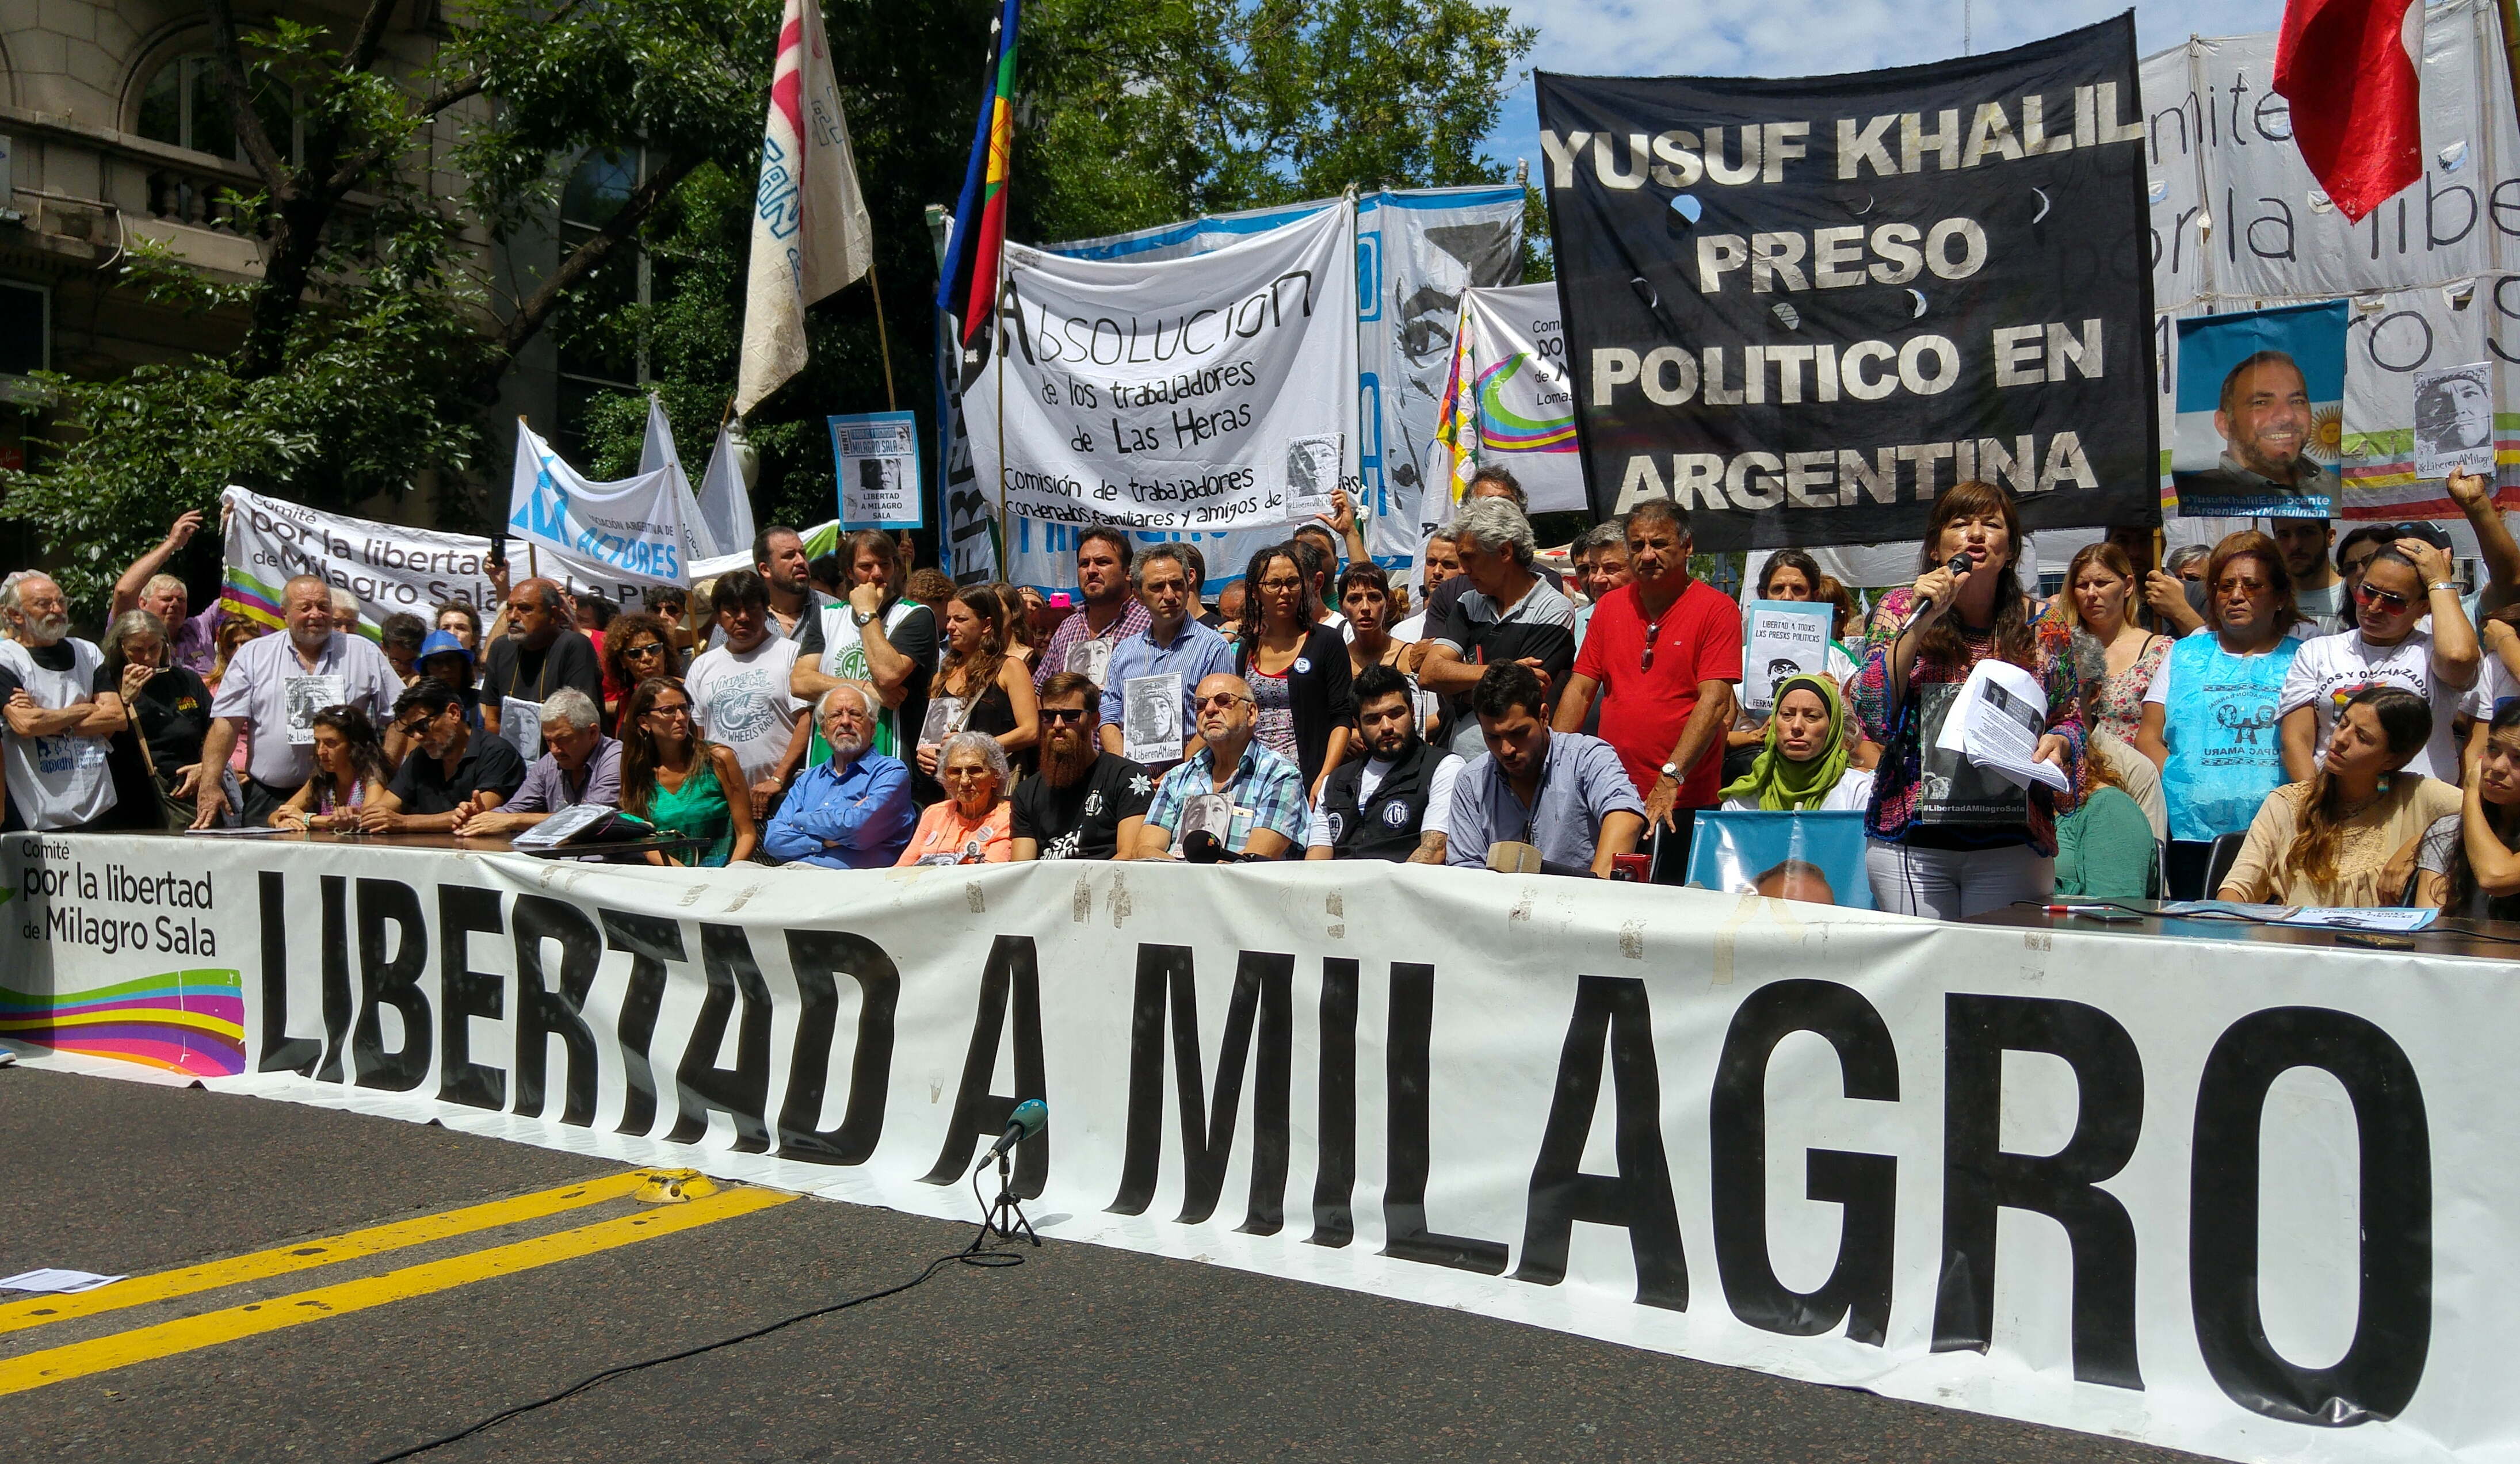 La causa contra la dirigente de Túpac Amaru inició luego de los incidentes ocurridos en el Consejo de Profesionales en Ciencias Económicas de Jujuy en 2009.